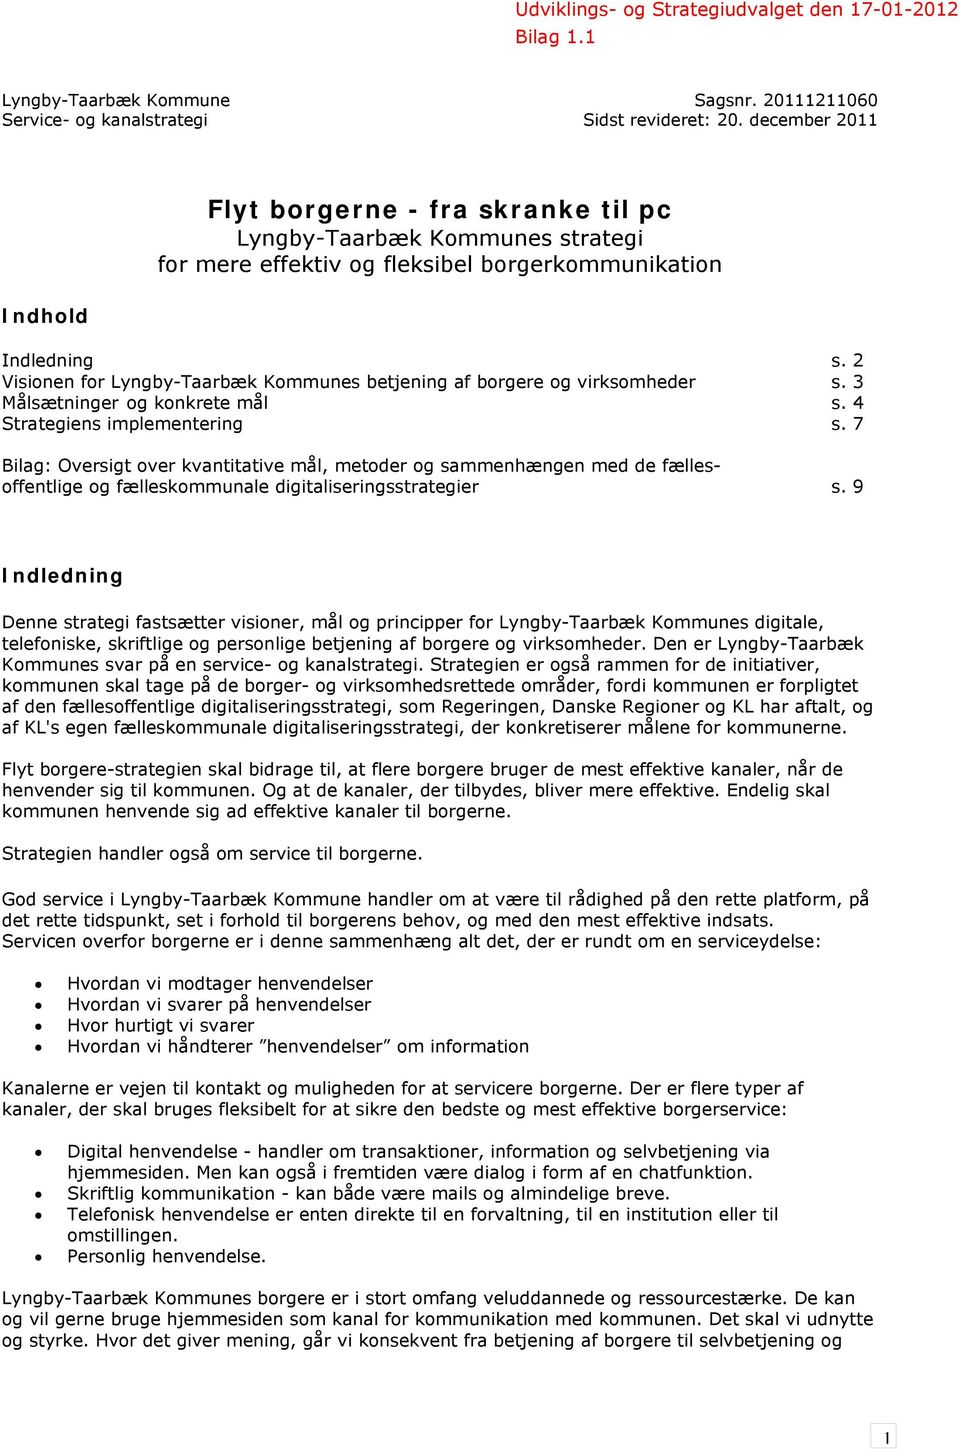 2 Visionen for Lyngby-Taarbæk Kommunes betjening af borgere og virksomheder s. 3 Målsætninger og konkrete mål s. 4 Strategiens implementering s.